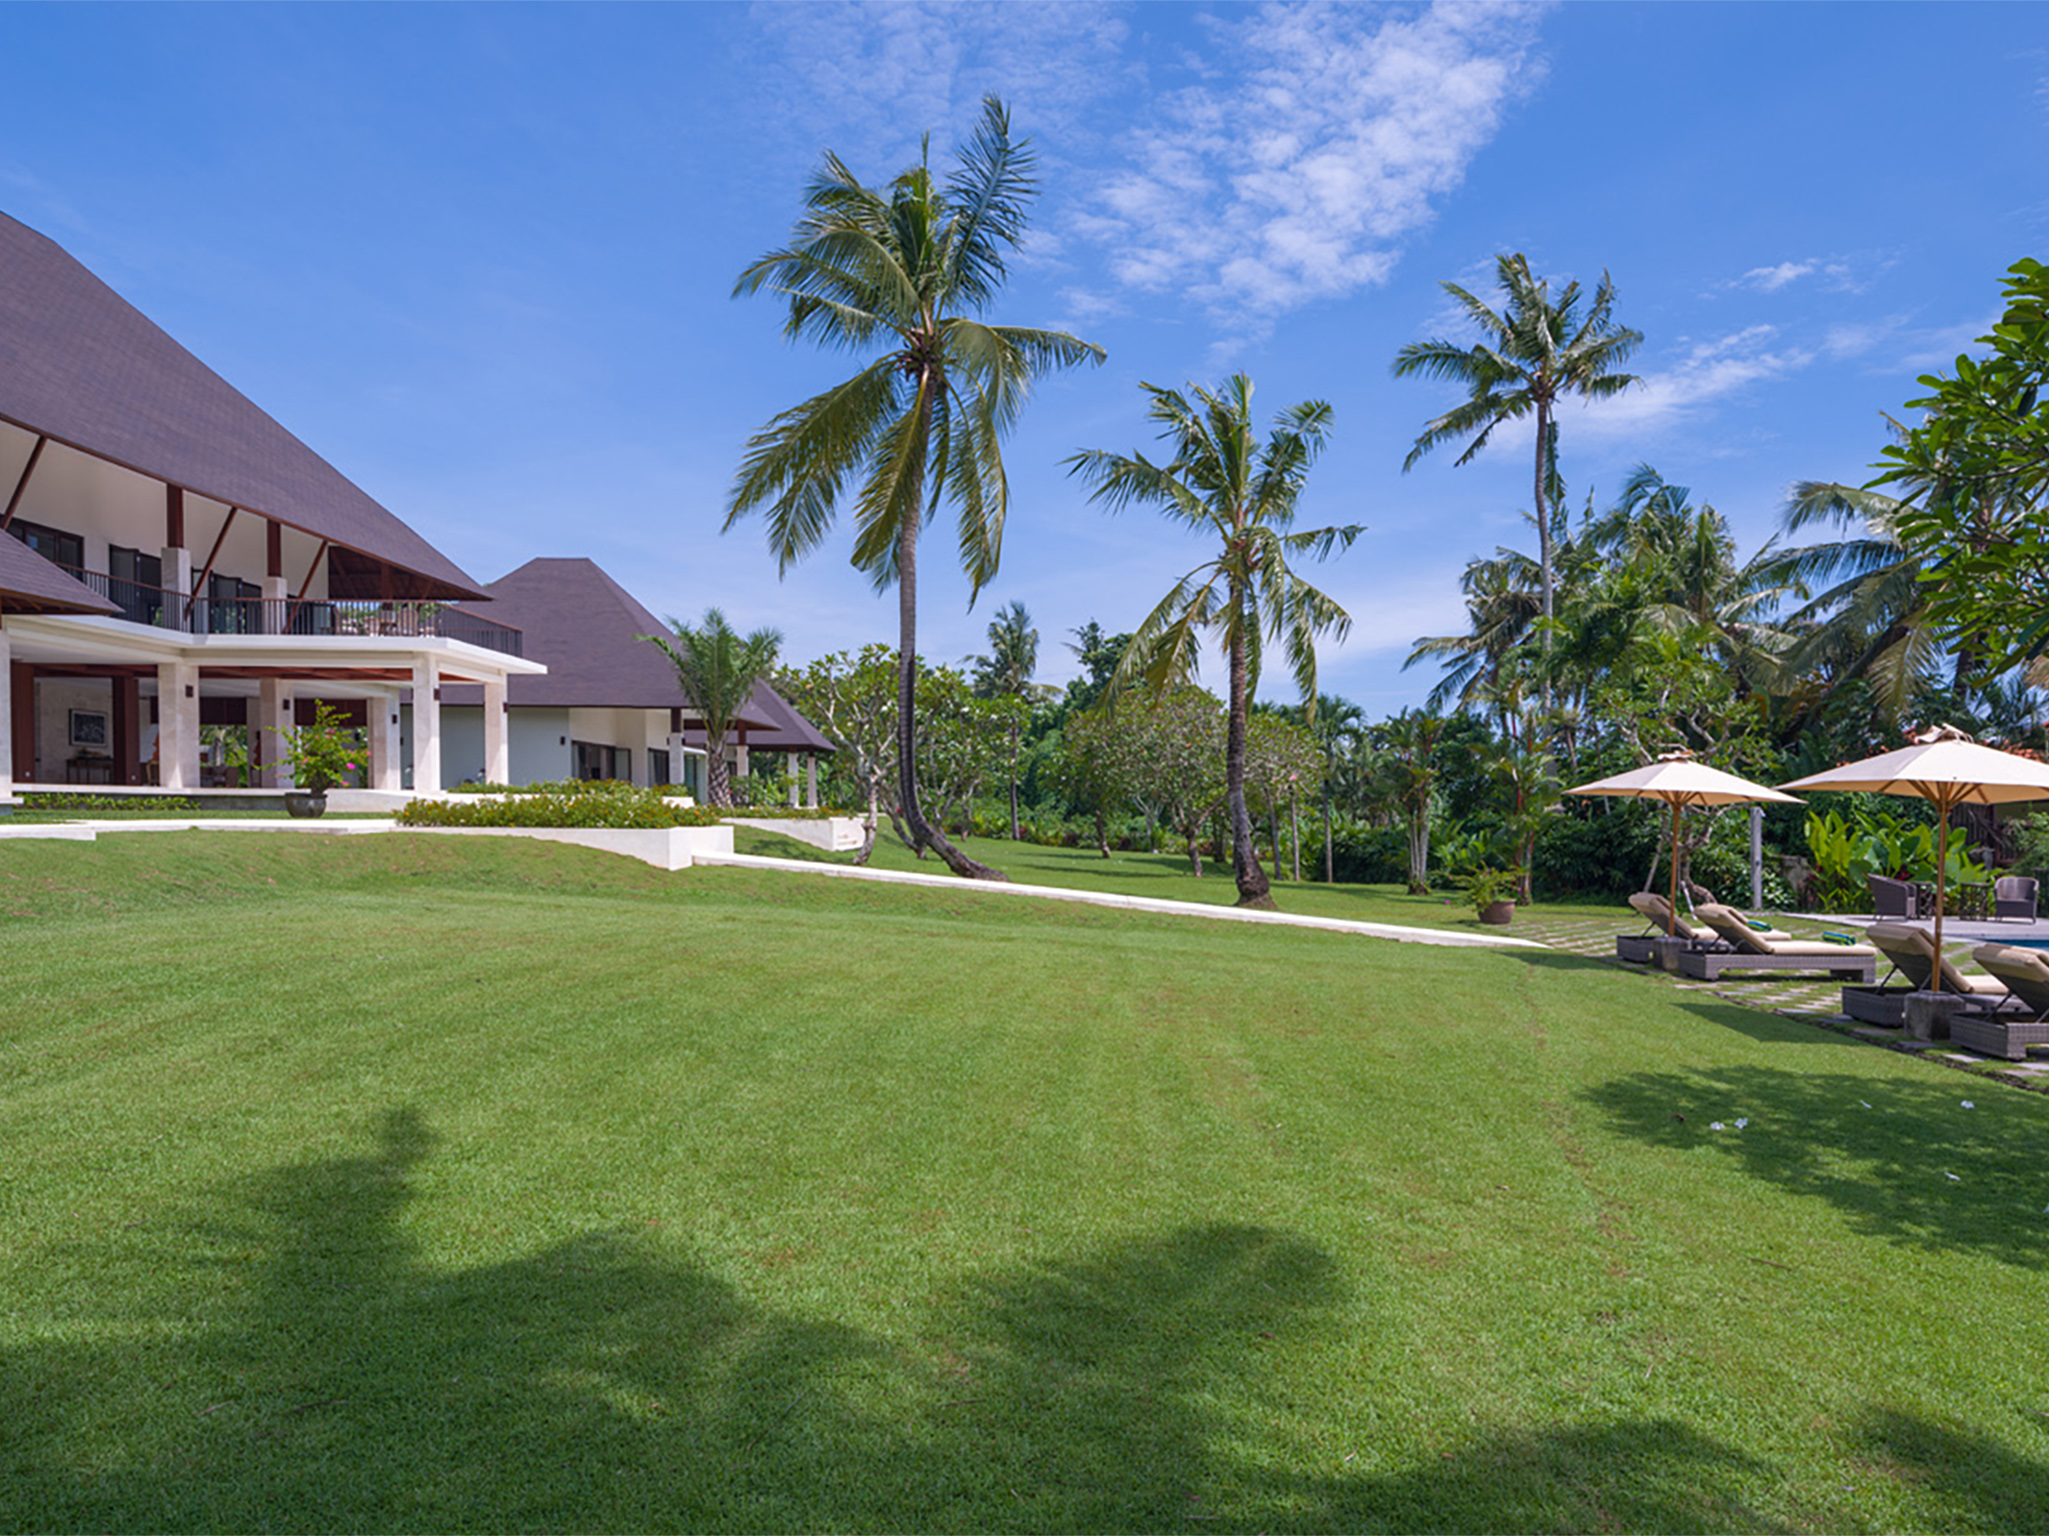 Villa Kailasha - View of main house from lawn - Villa Kailasha, Tabanan, Bali